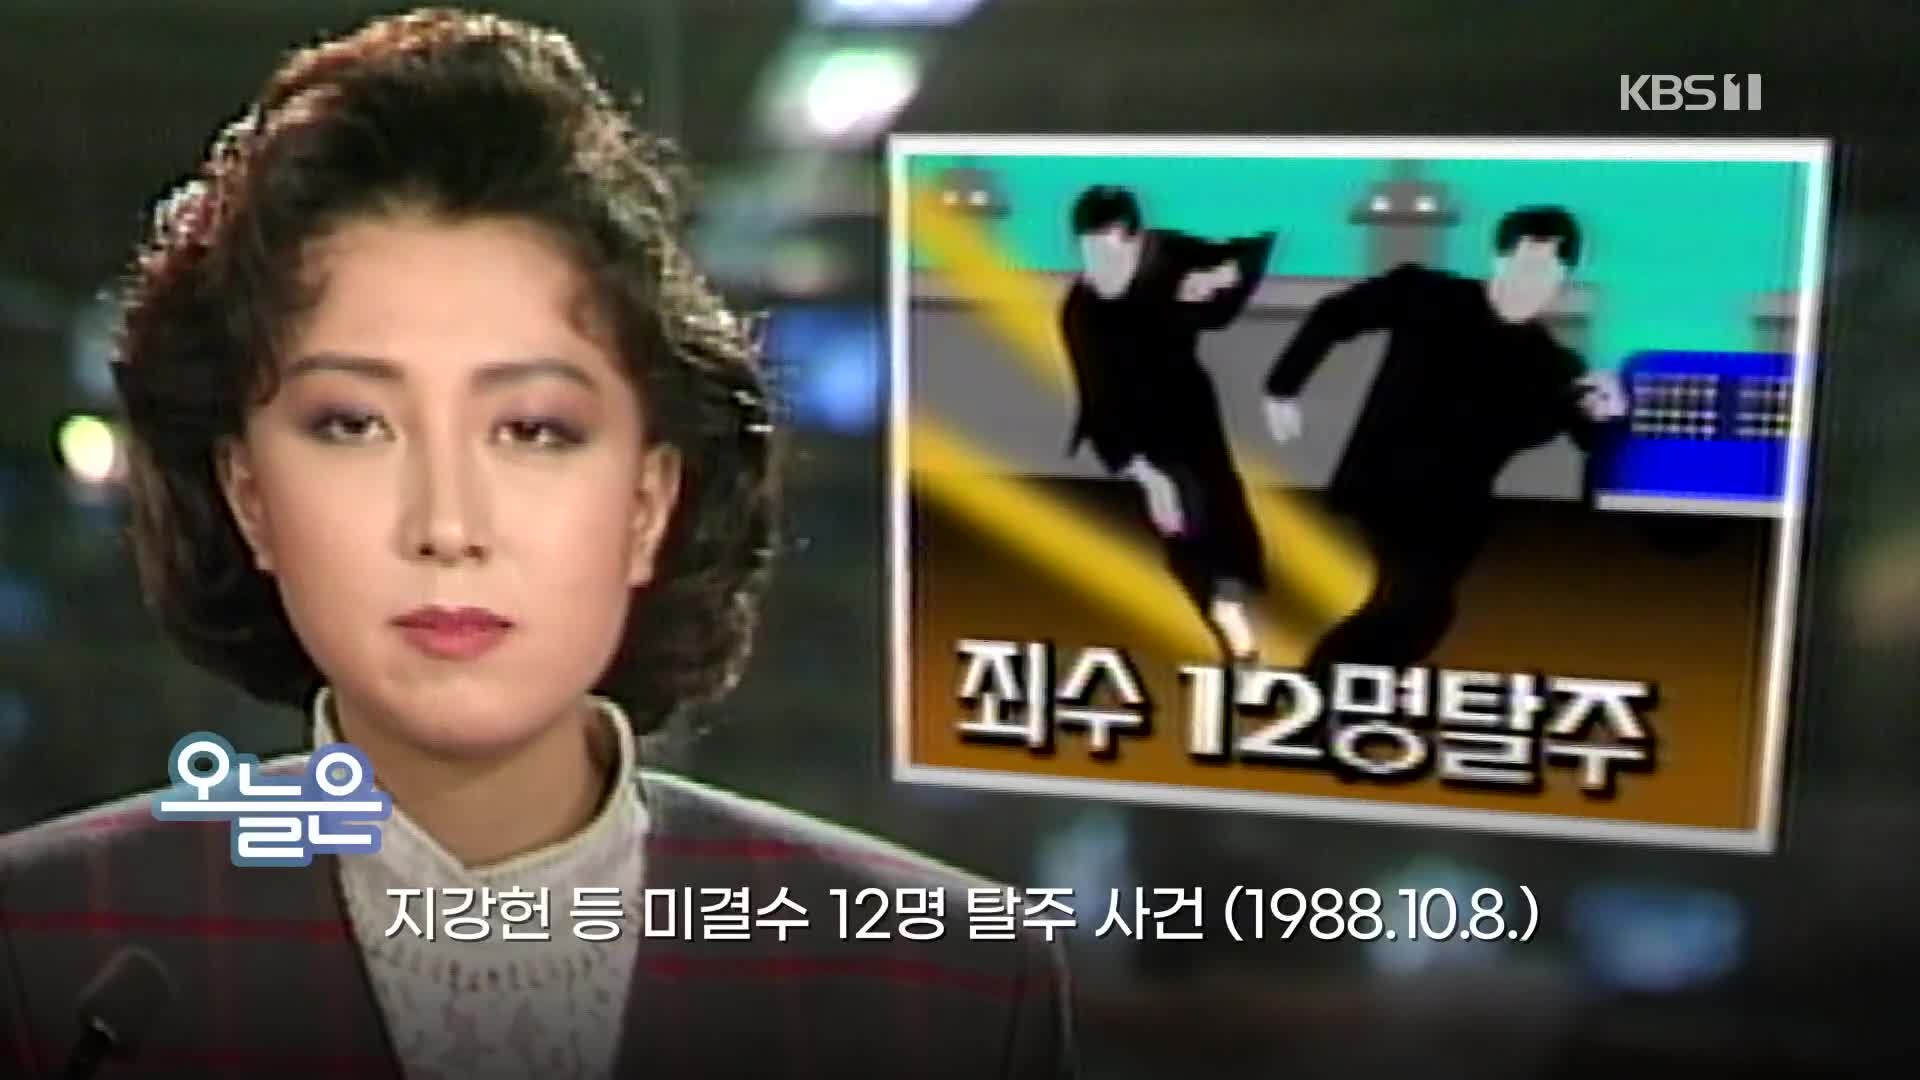 [오늘은] 지강헌 등 미결수 12명 탈주 사건 (1988.10.8.)